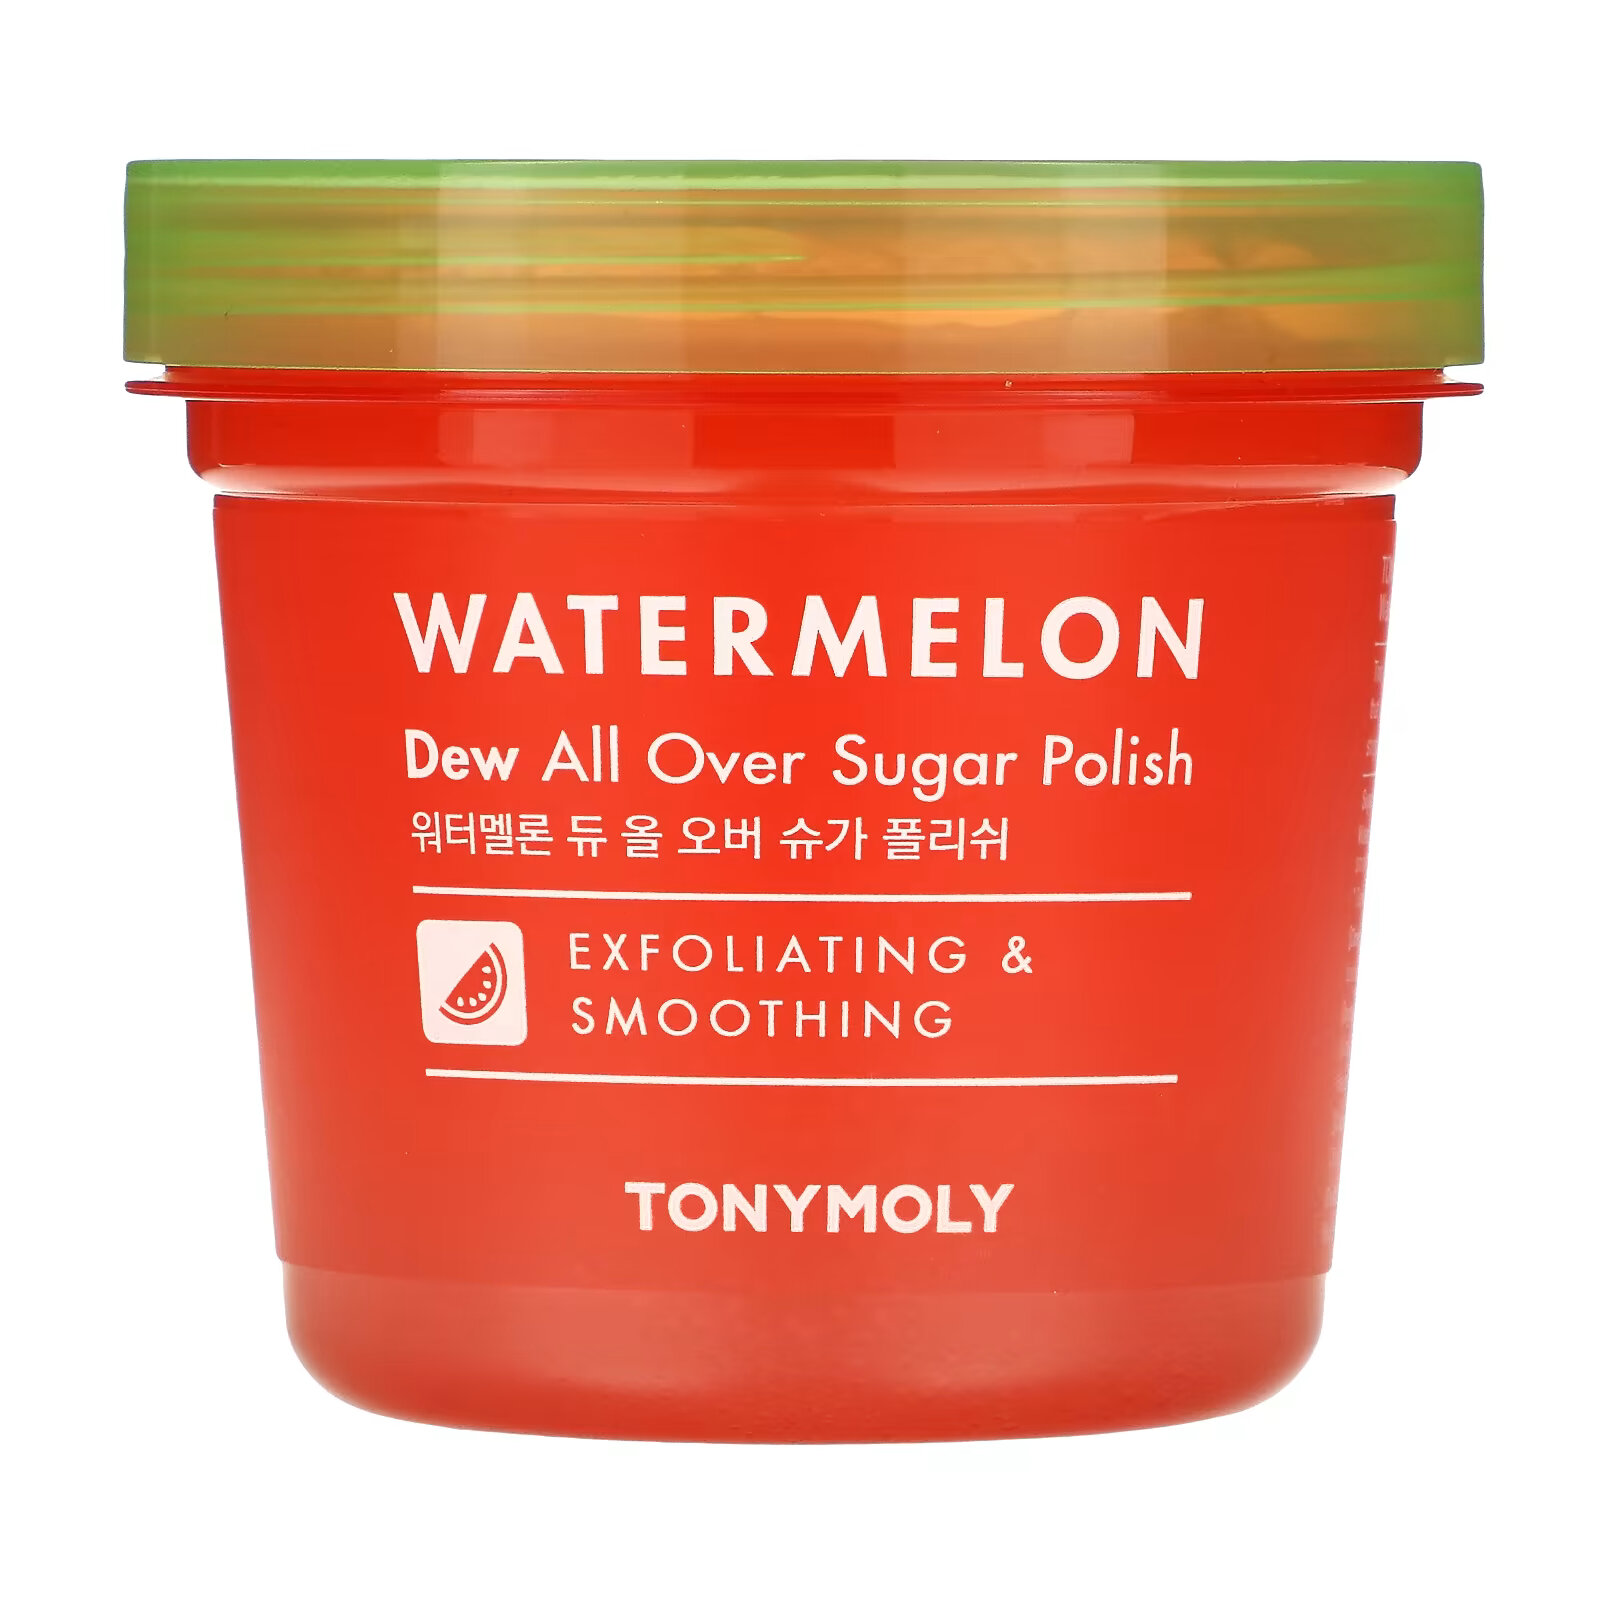 Tony Moly, Watermelon, средство для ухода за кожей с сахаром, 300 мл (10,14 жидк. Унции) tony moly watermelon средство для ухода за кожей с сахаром 300 мл 10 14 жидк унции